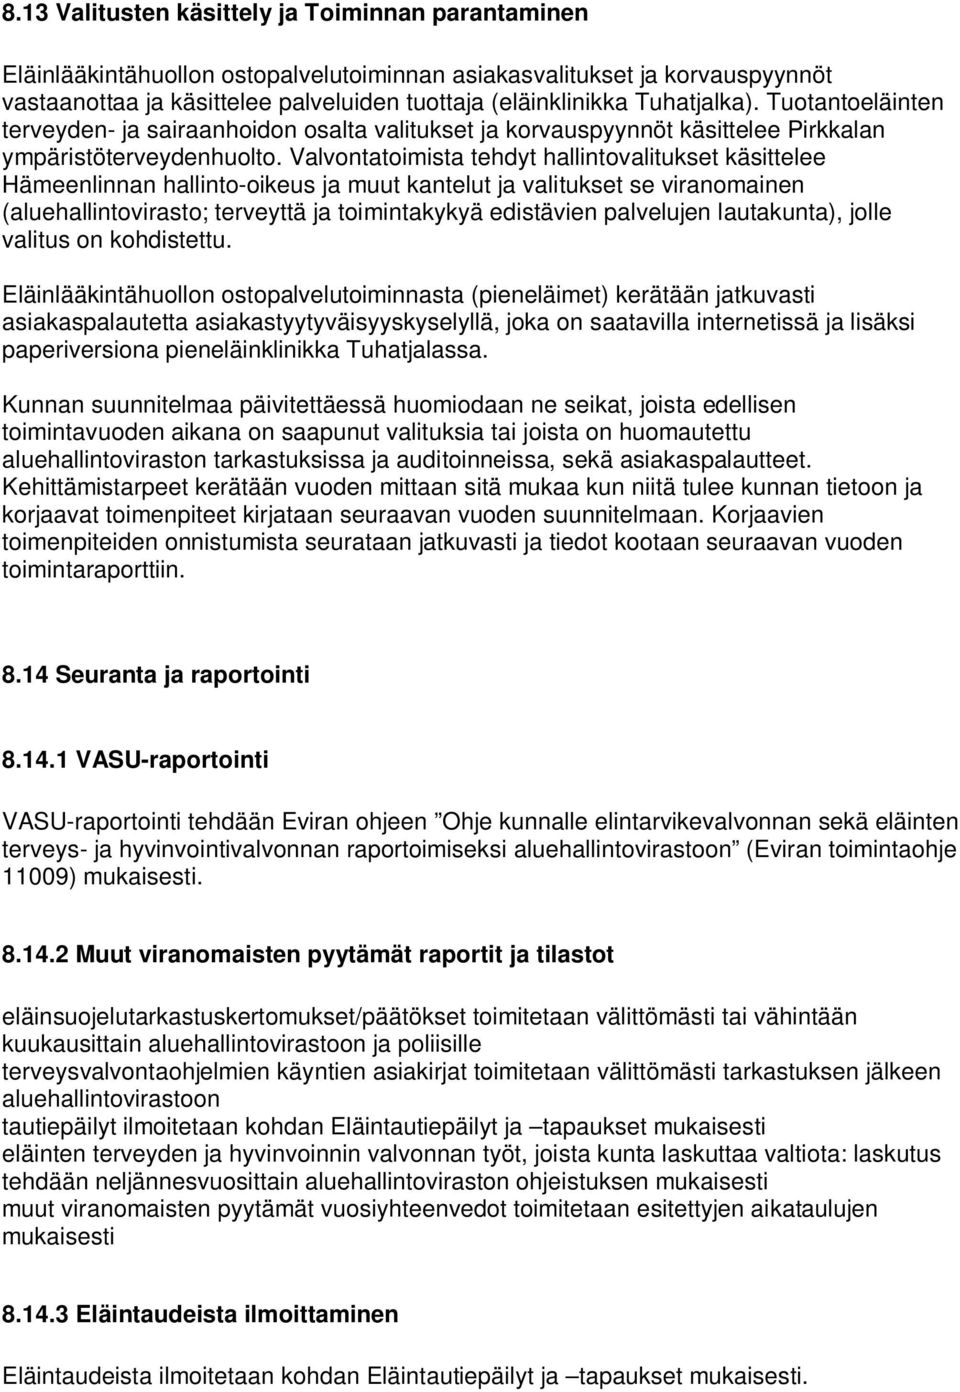 Valvontatoimista tehdyt hallintovalitukset käsittelee Hämeenlinnan hallinto-oikeus ja muut kantelut ja valitukset se viranomainen (aluehallintovirasto; terveyttä ja toimintakykyä edistävien